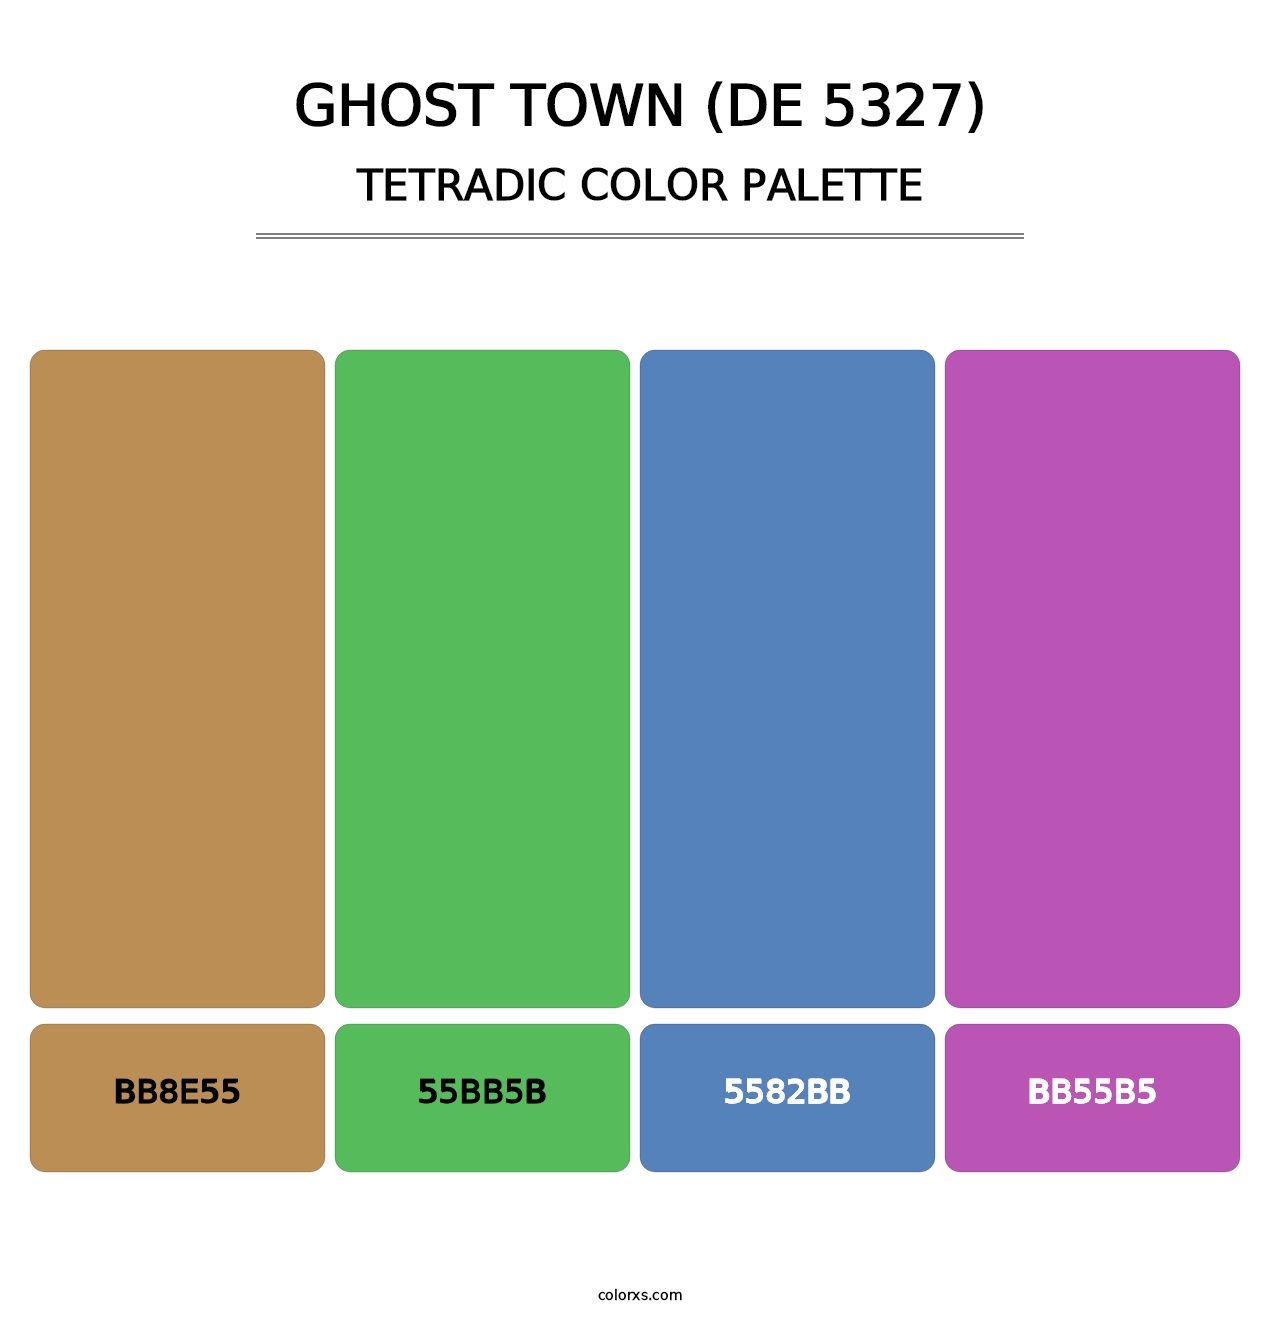 Ghost Town (DE 5327) - Tetradic Color Palette